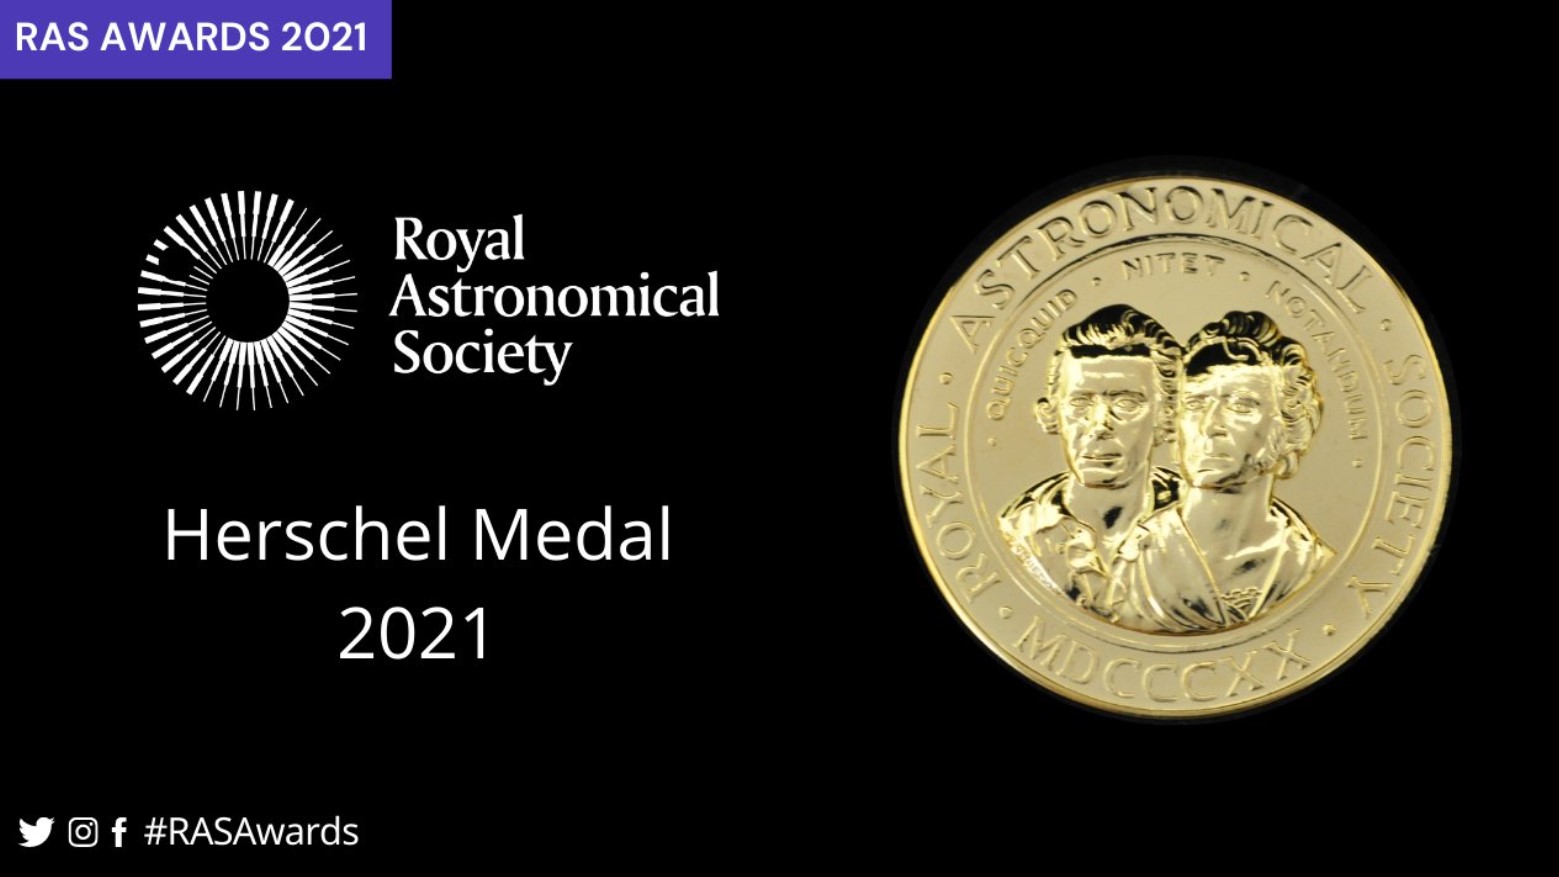 https://daro.qub.ac.uk/Professor-Stephen-Smartt-wins-Herschel-Medal-